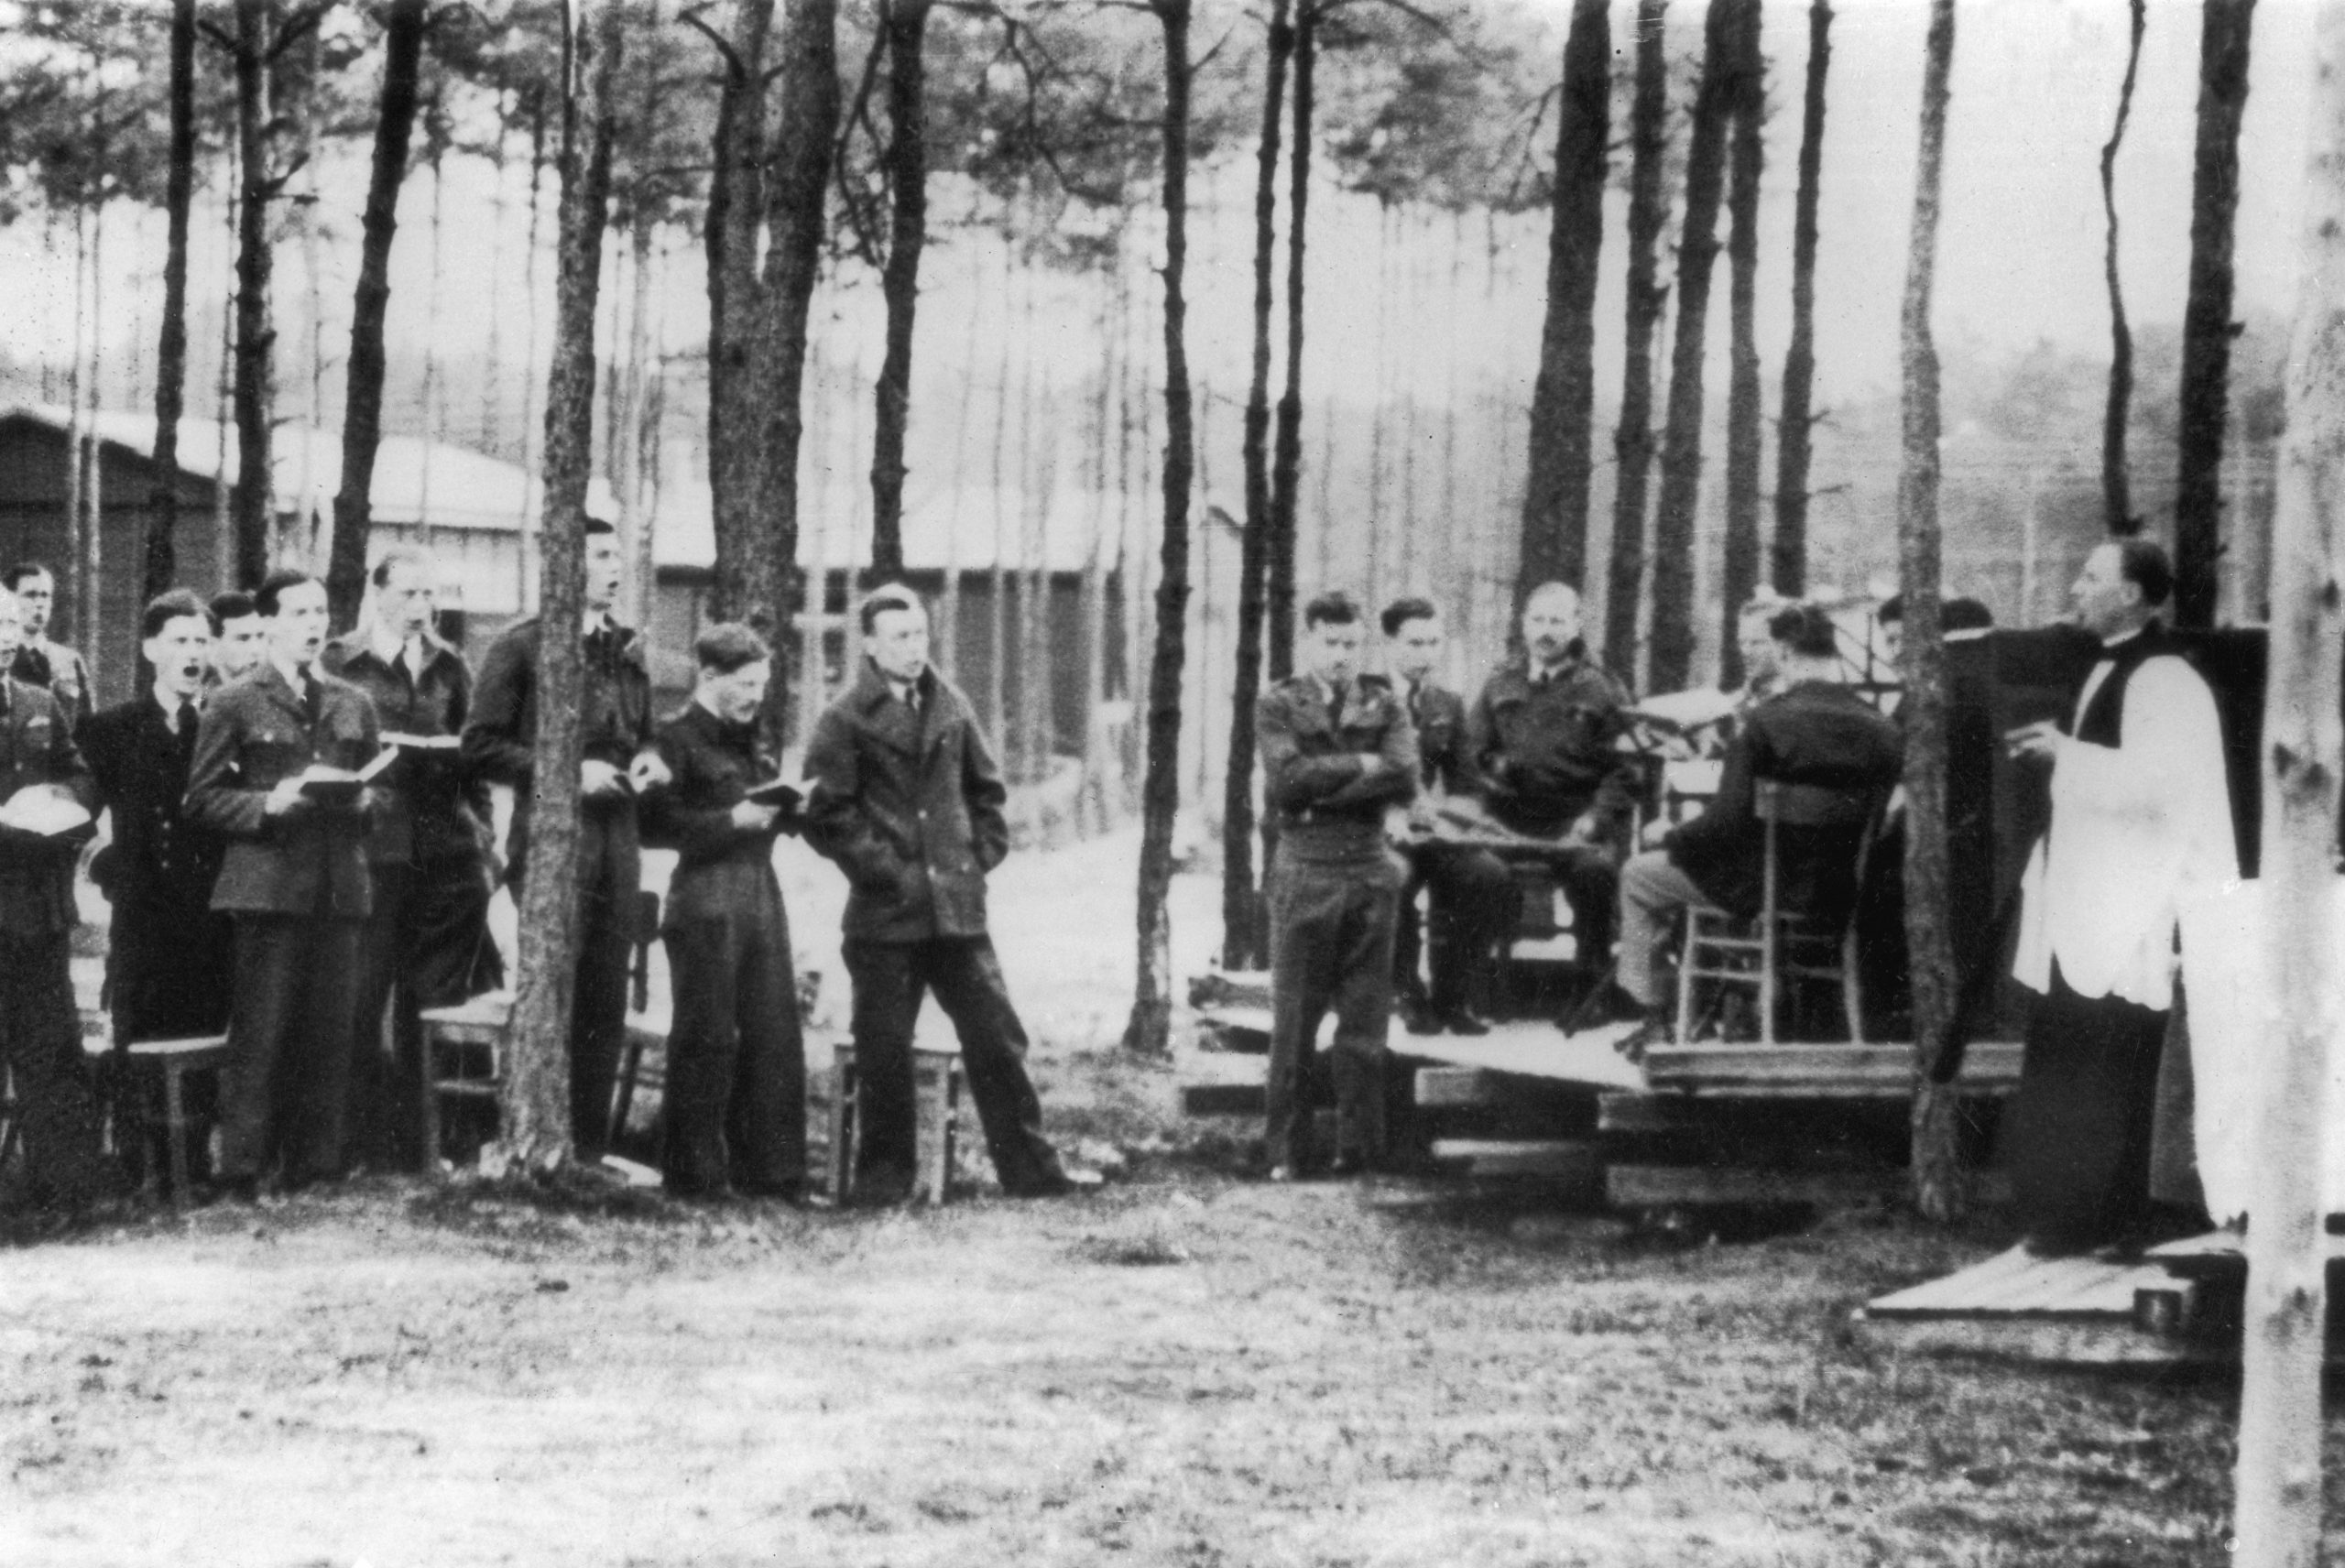 Stalag Luft 3 prisoner of war camp WWII